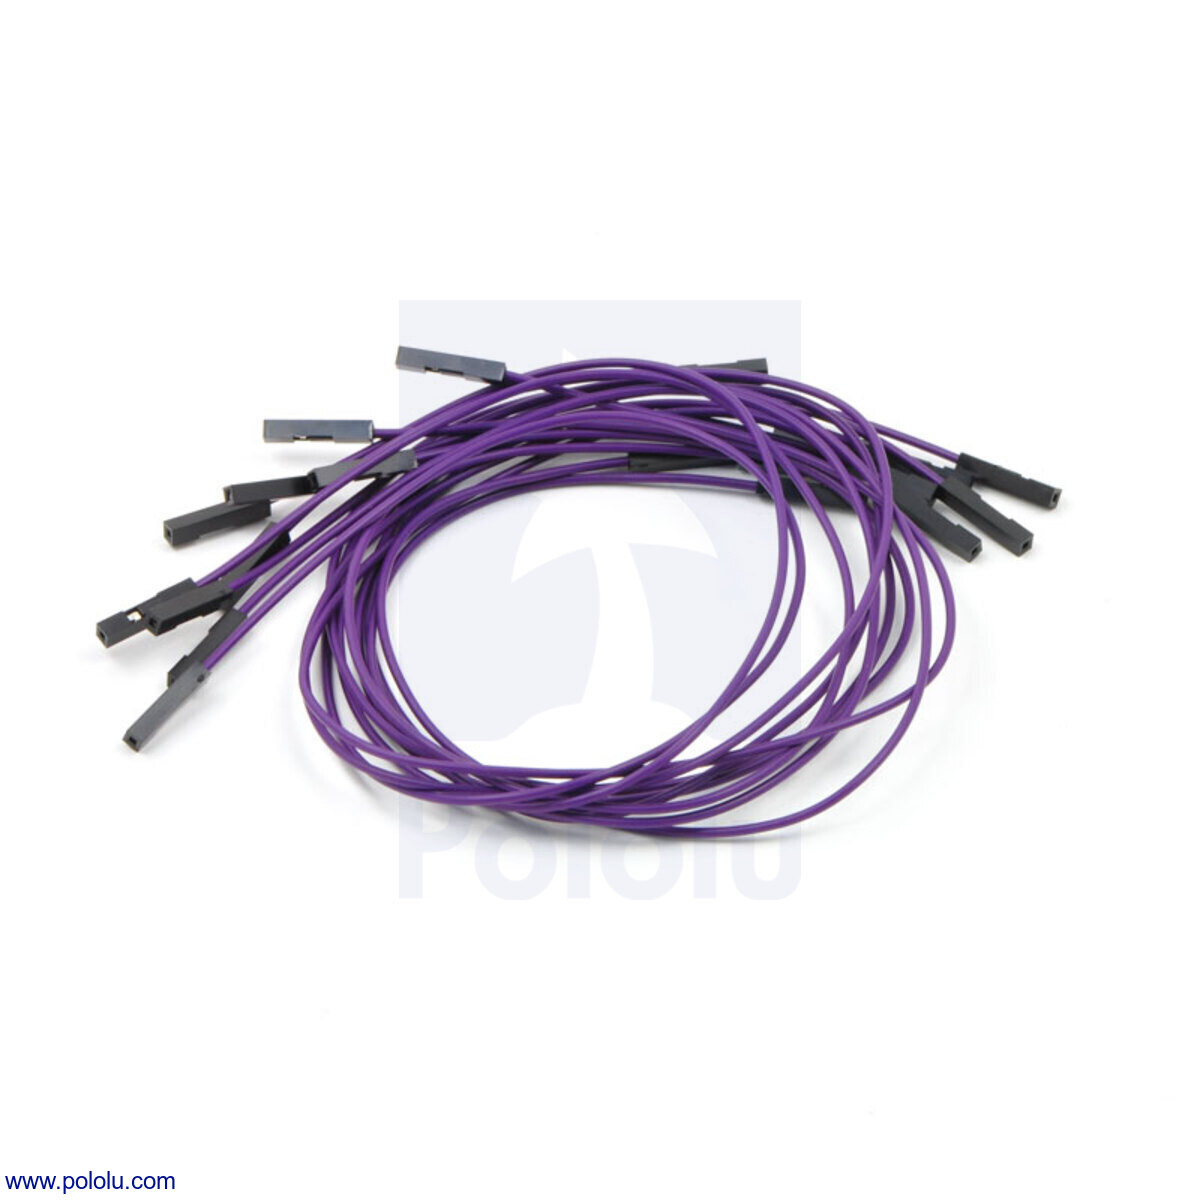 Pololu - Premium Jumper Wire 10-Pack F-F 12 Purple